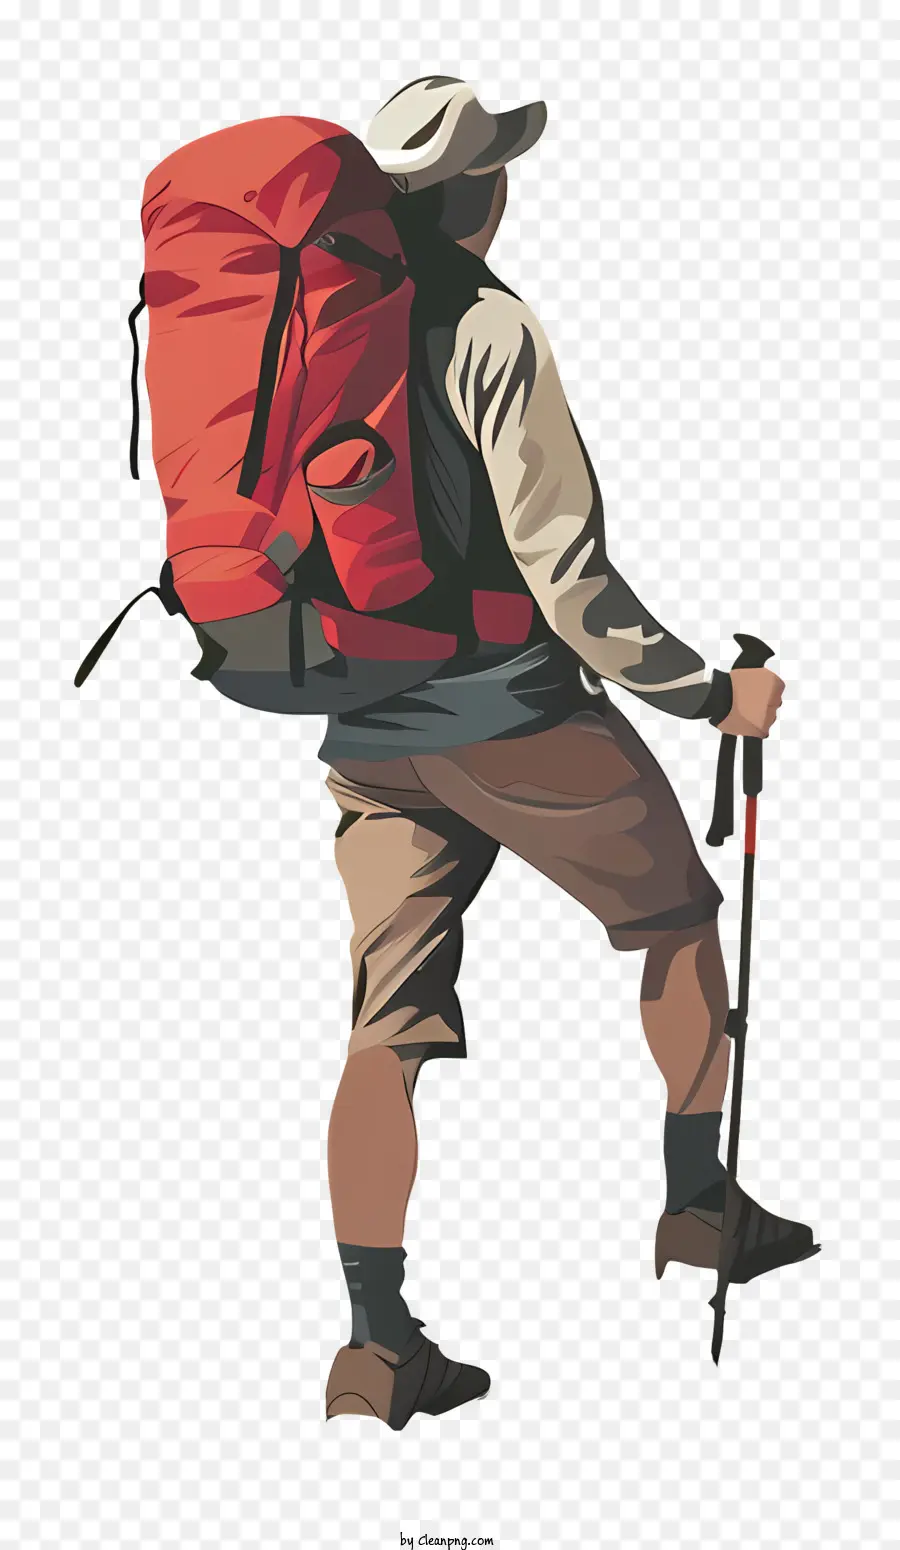 Alpinista，Caminhadas PNG